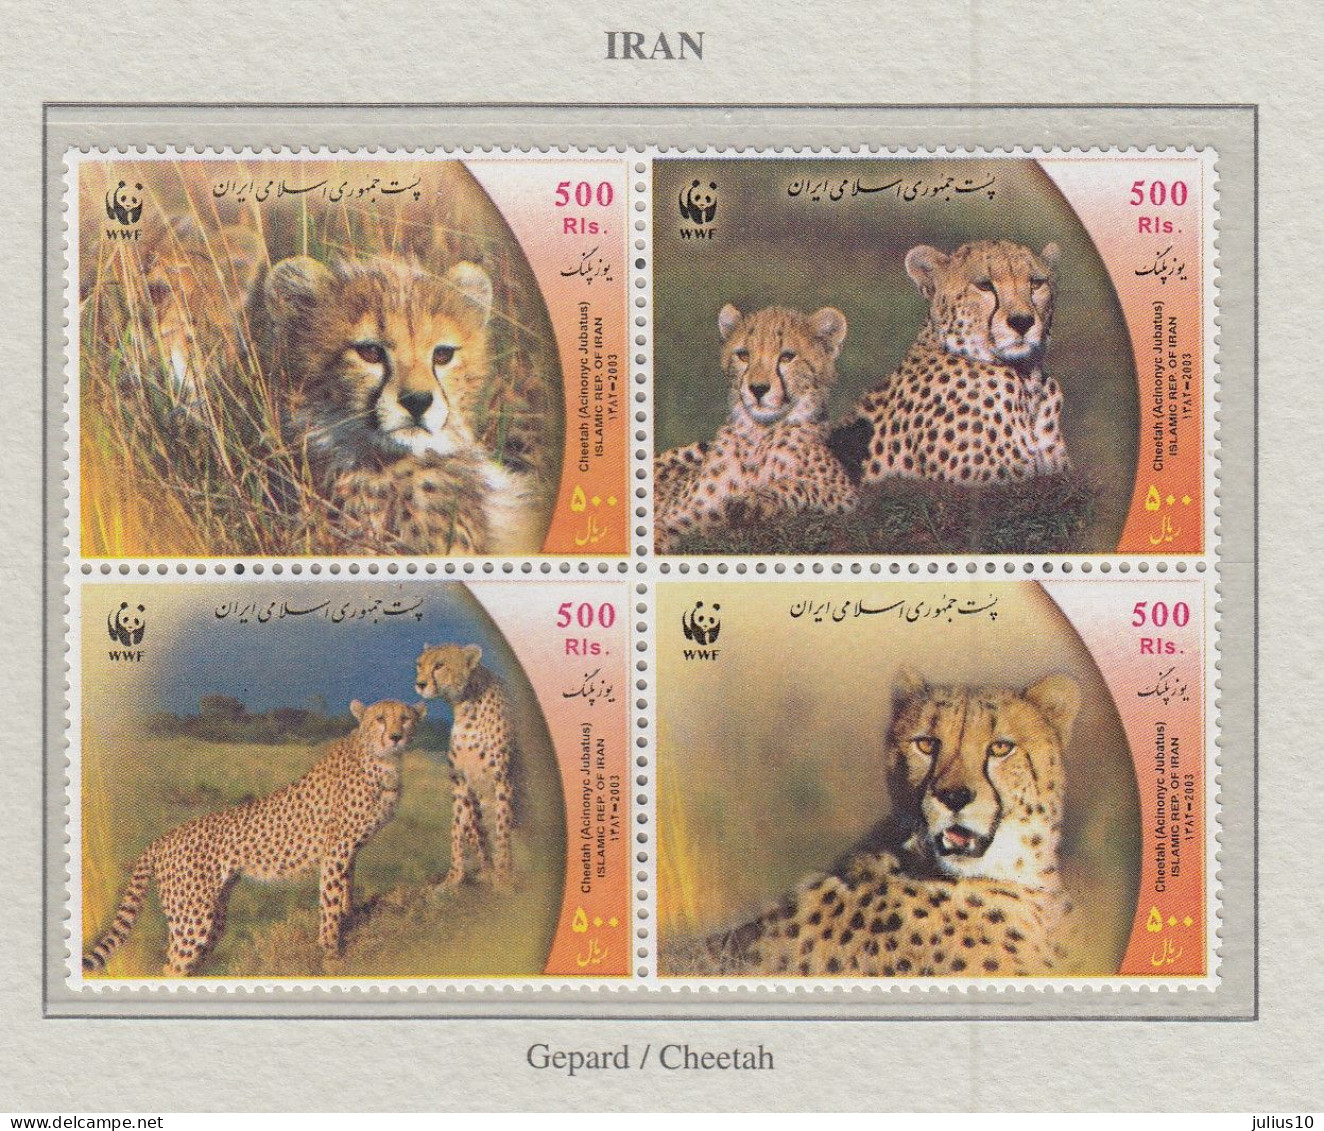 IRAN 2003 WWF Wild Cats Mi 2932-2935 MNH Fauna 676 - Raubkatzen